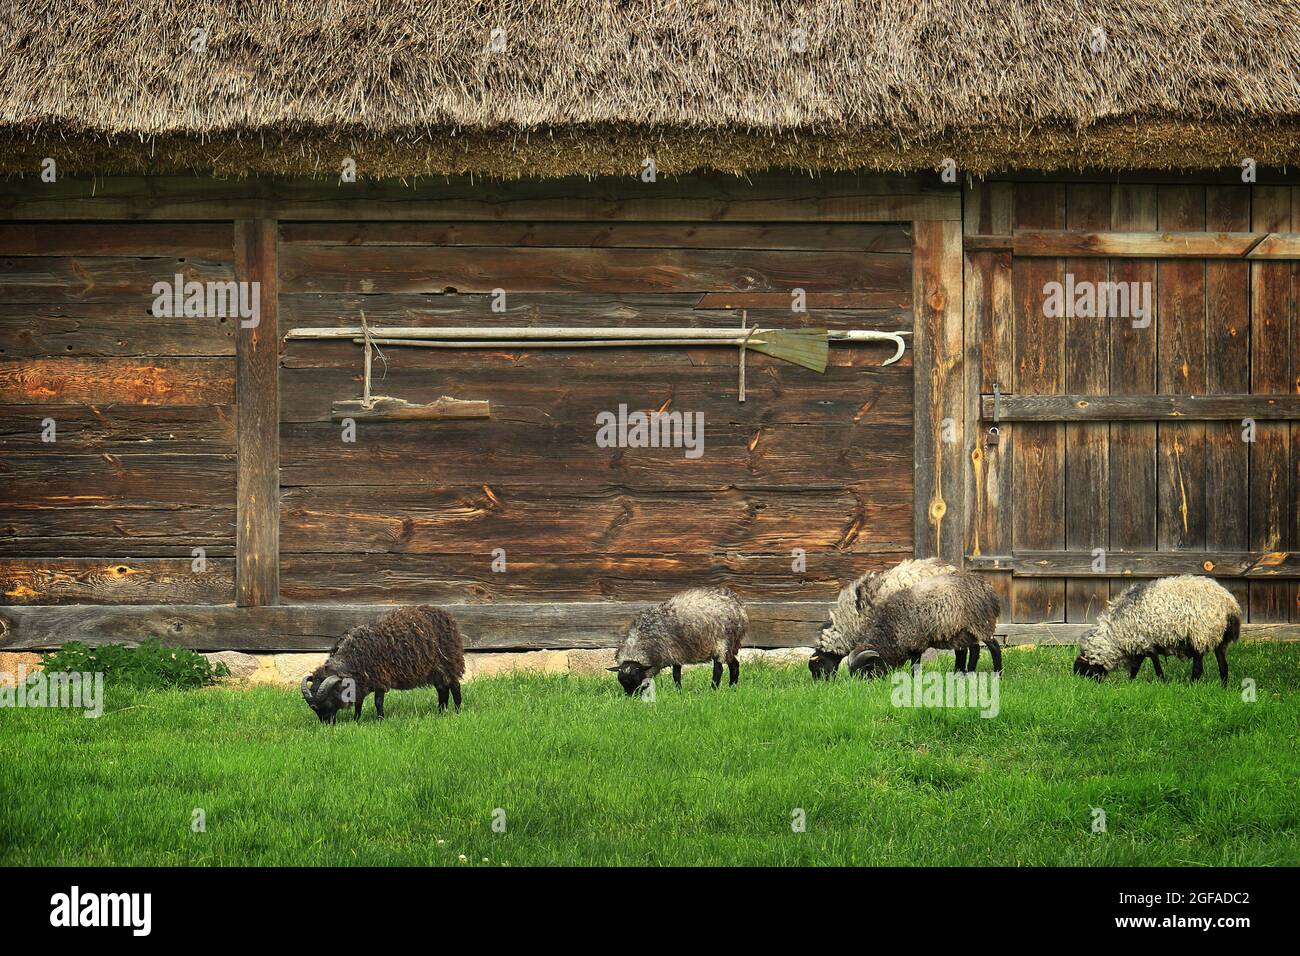 SIERPC, POLONIA - 25 agosto 2017: Un gruppo di pecore di fronte ad un cortile rurale tetto di paglia. Foto Stock